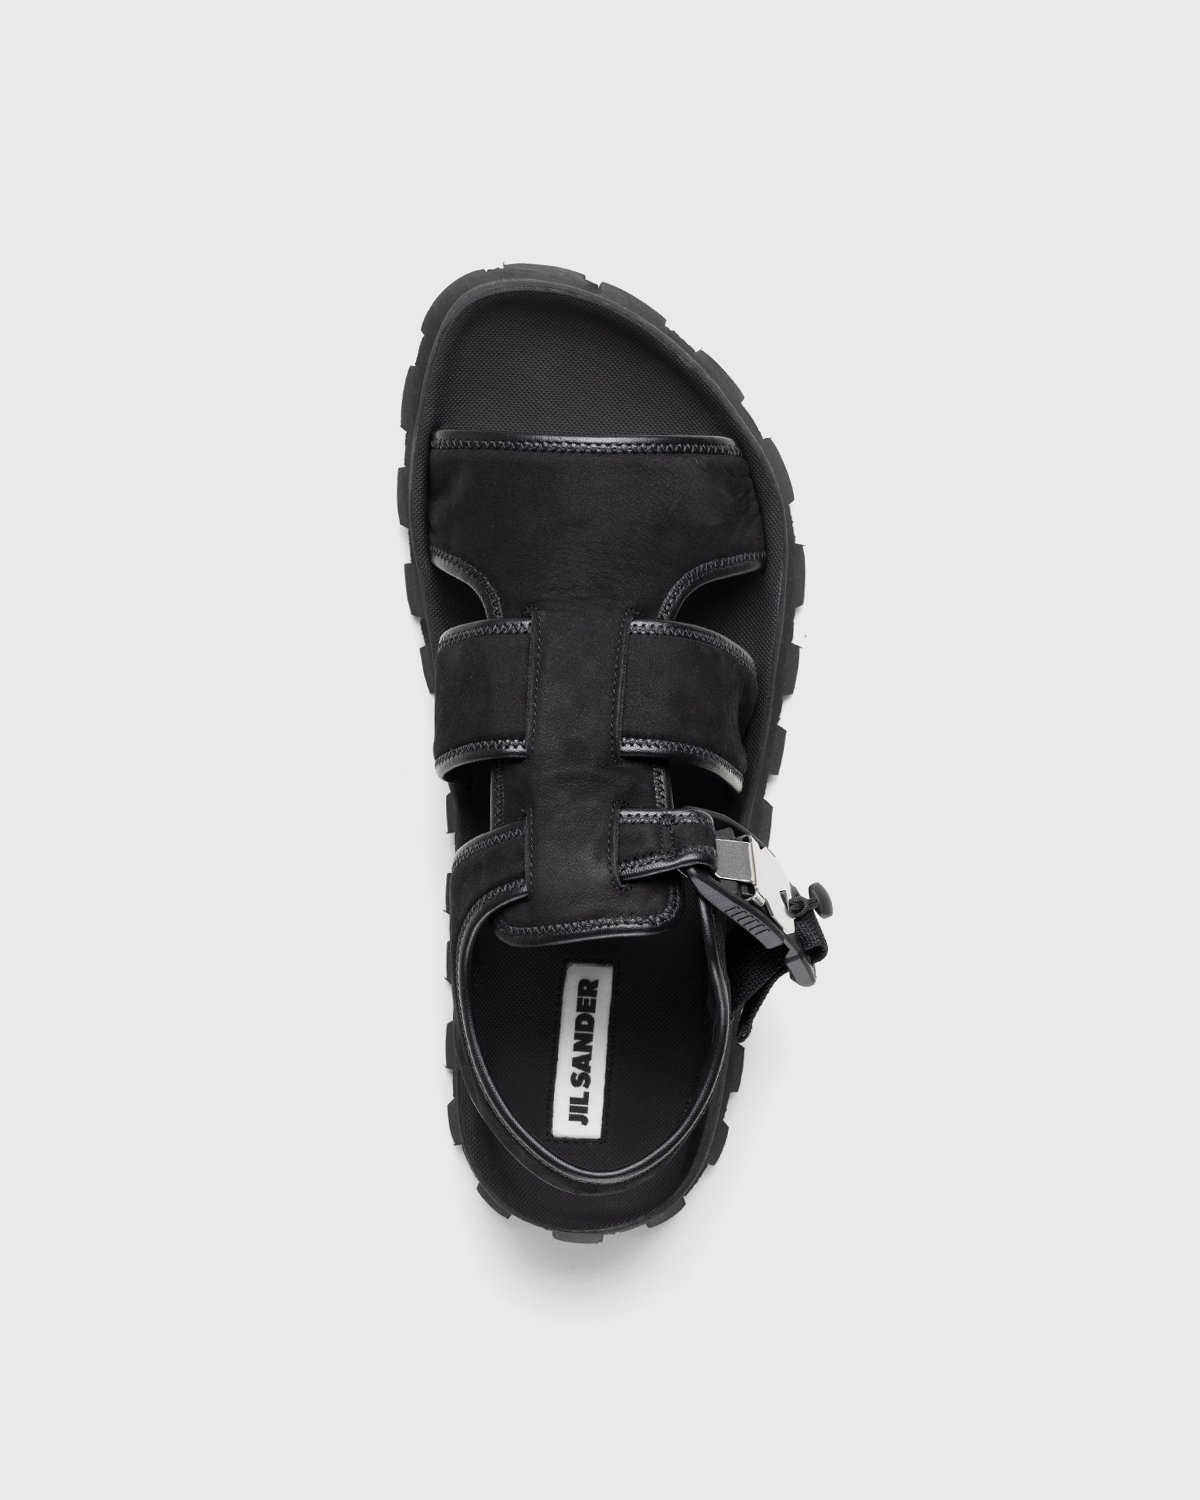 Jil Sander – Calfskin Leather Sandal Black - Sandals - Black - Image 6